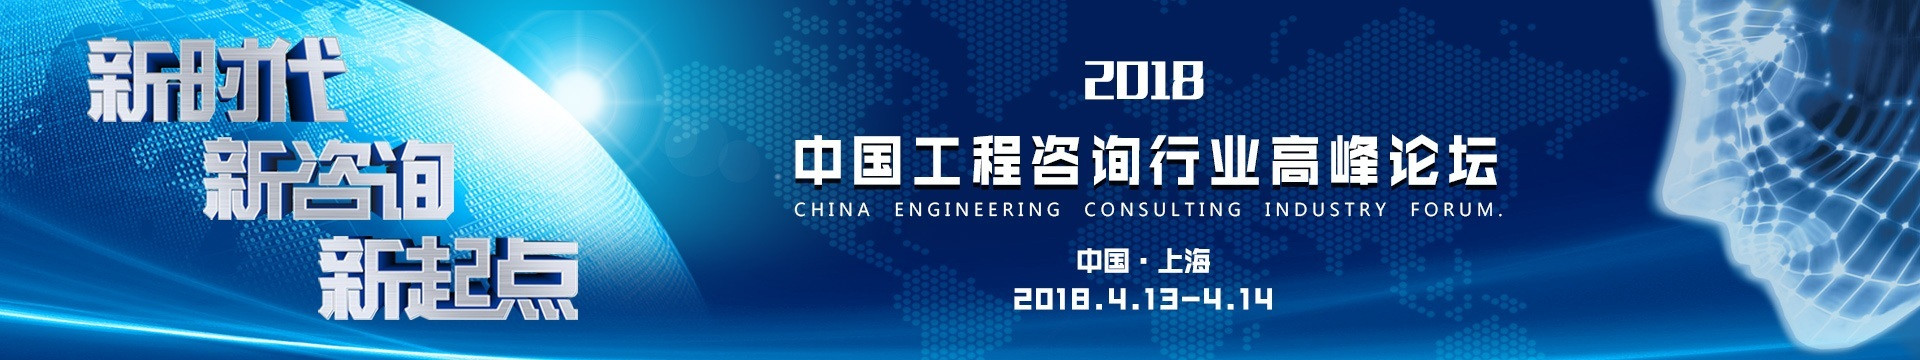 新时代、新咨询、新起点——中国工程咨询行业高峰论坛